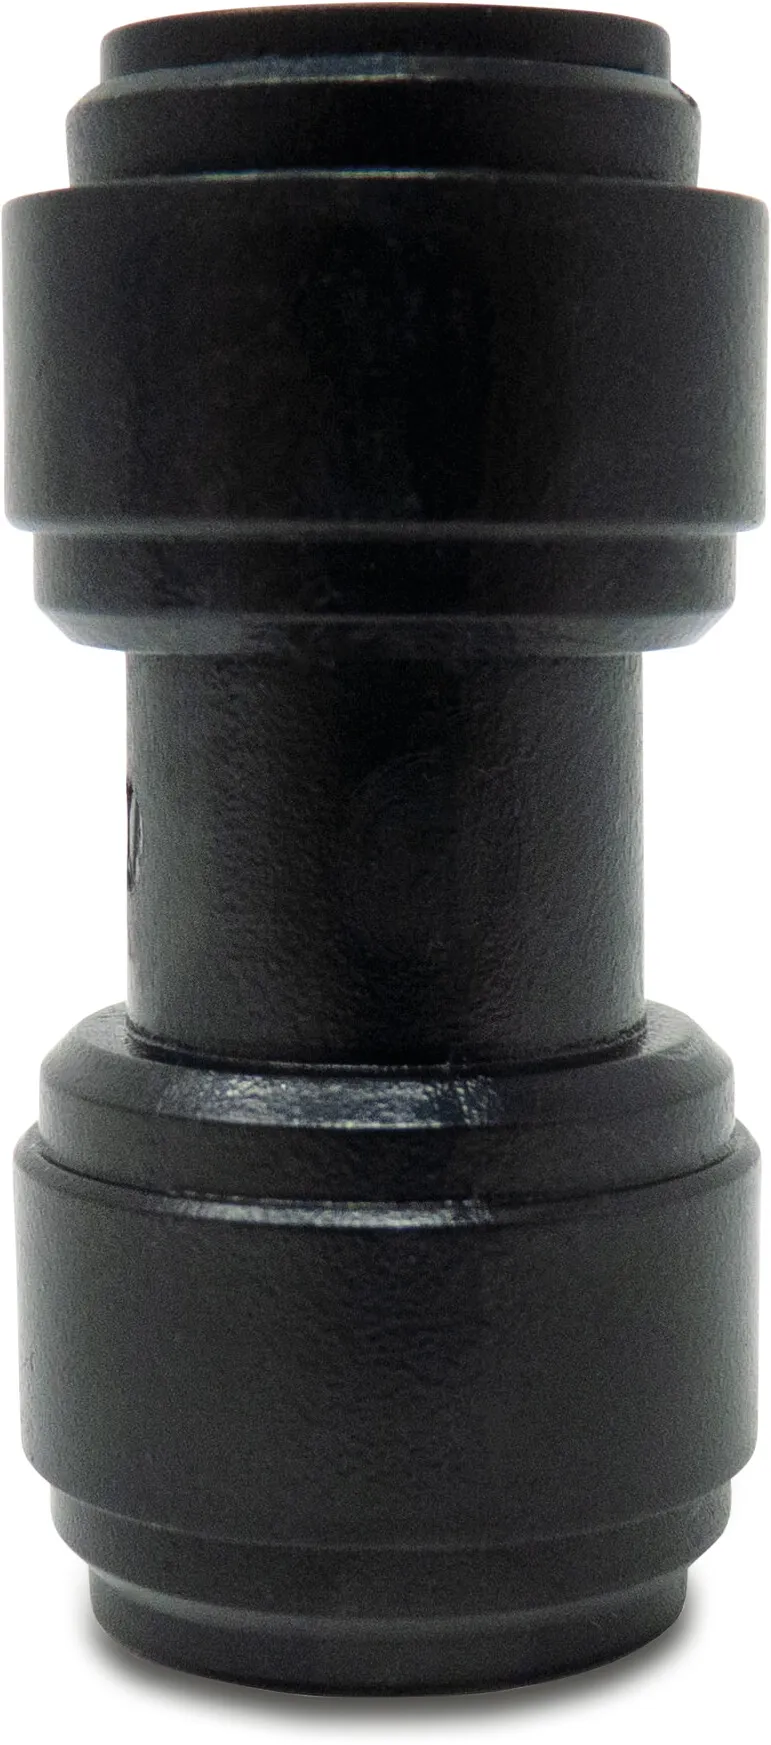 Aansluitstuk POM 4 mm insteek 20bar zwart WRAS type Aquaspeed